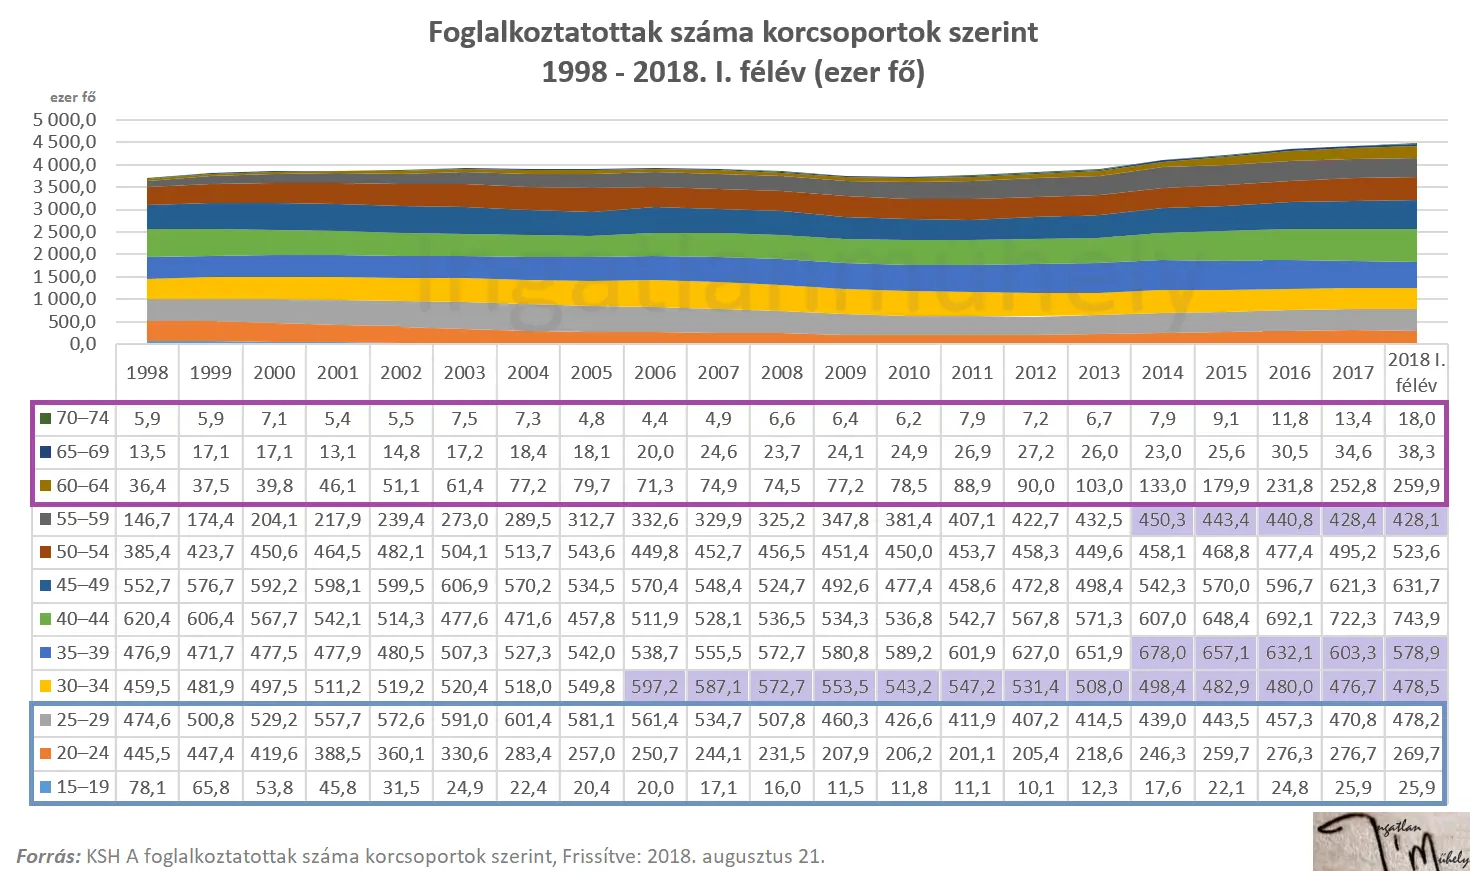 Haladjunk a korral - Foglalkoztatottak száma korcsoport szerint 1998-2018 - Magyarország